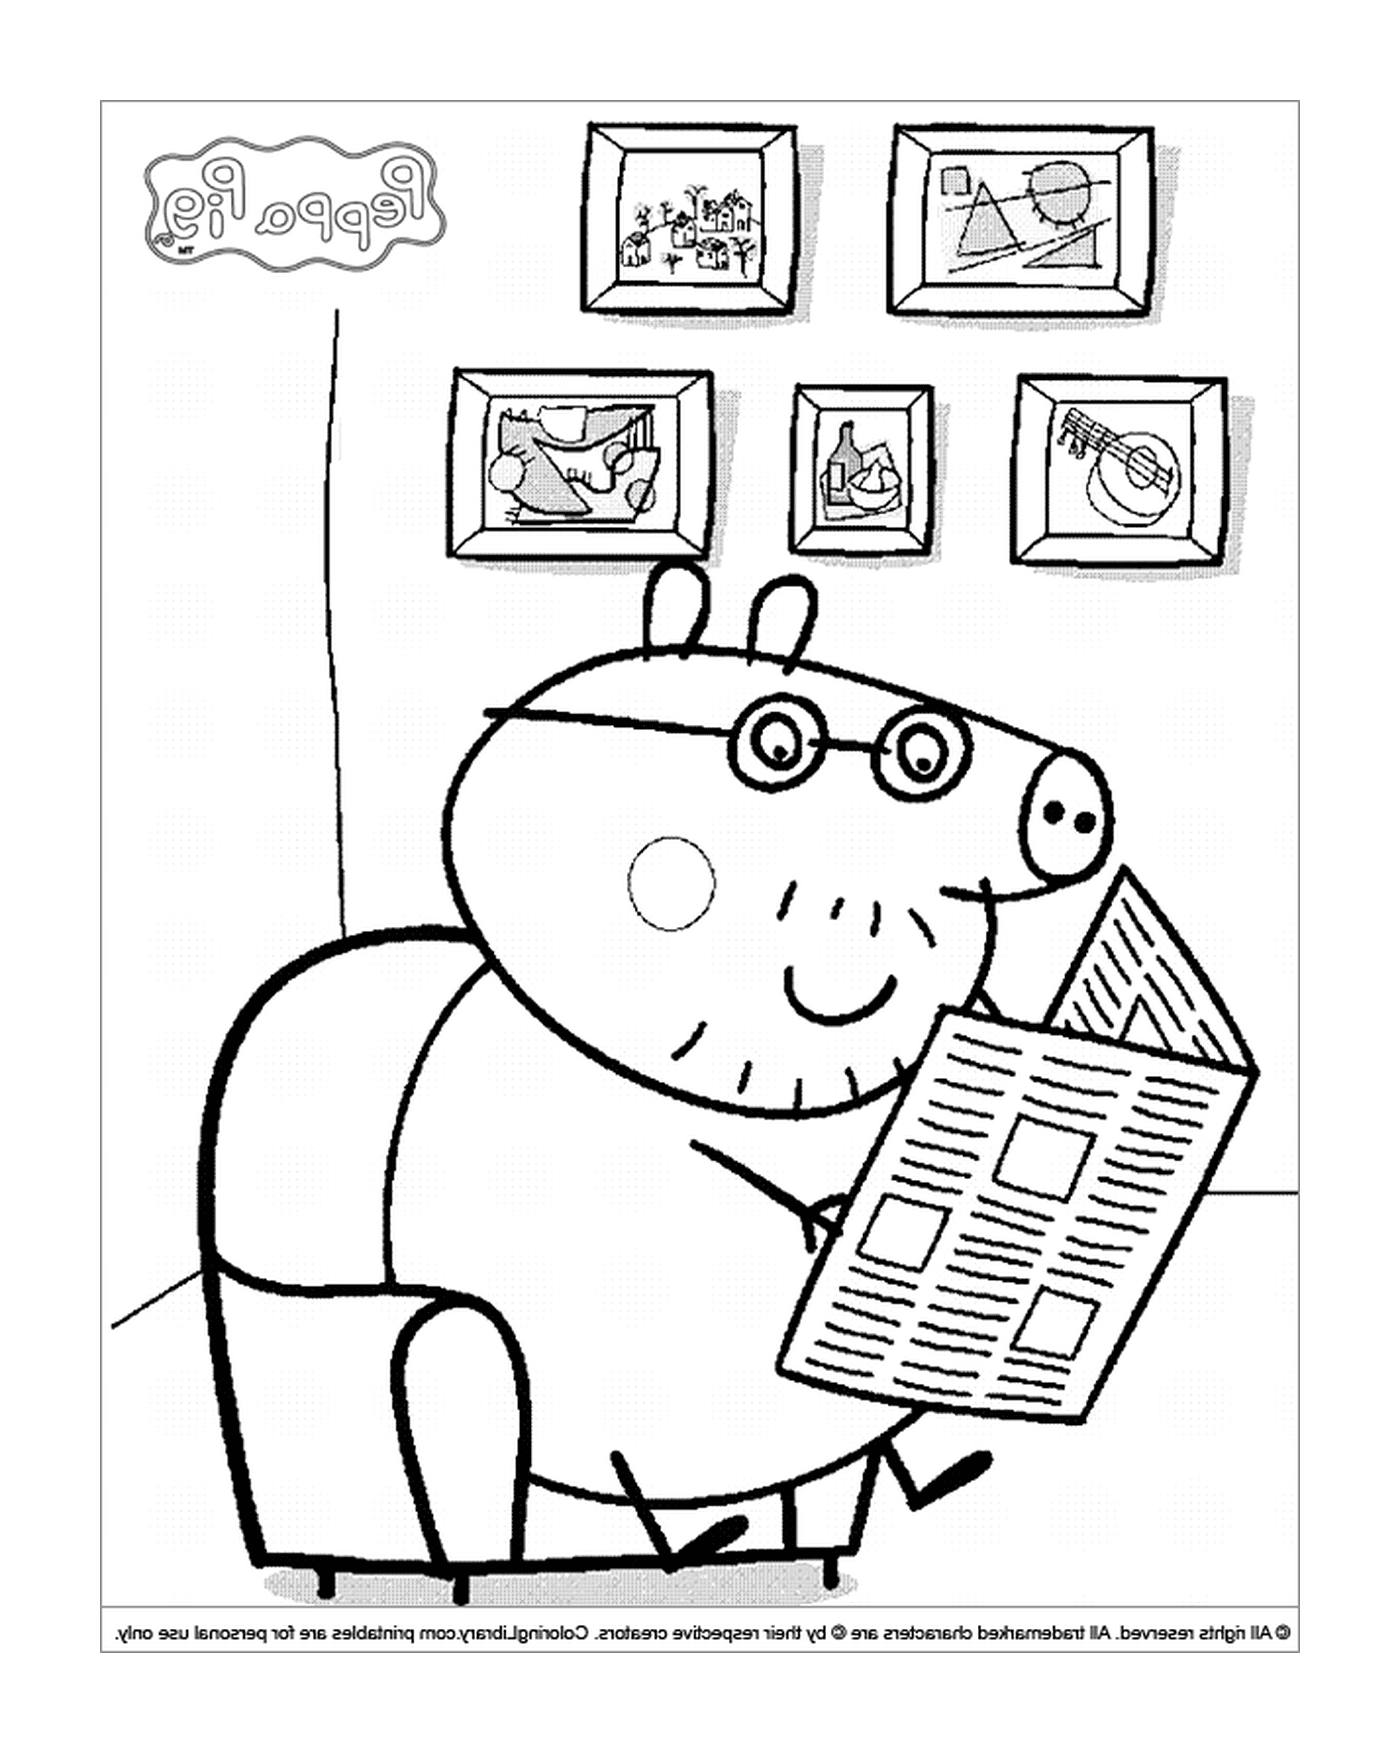  خنزير يقرأ صحيفة 